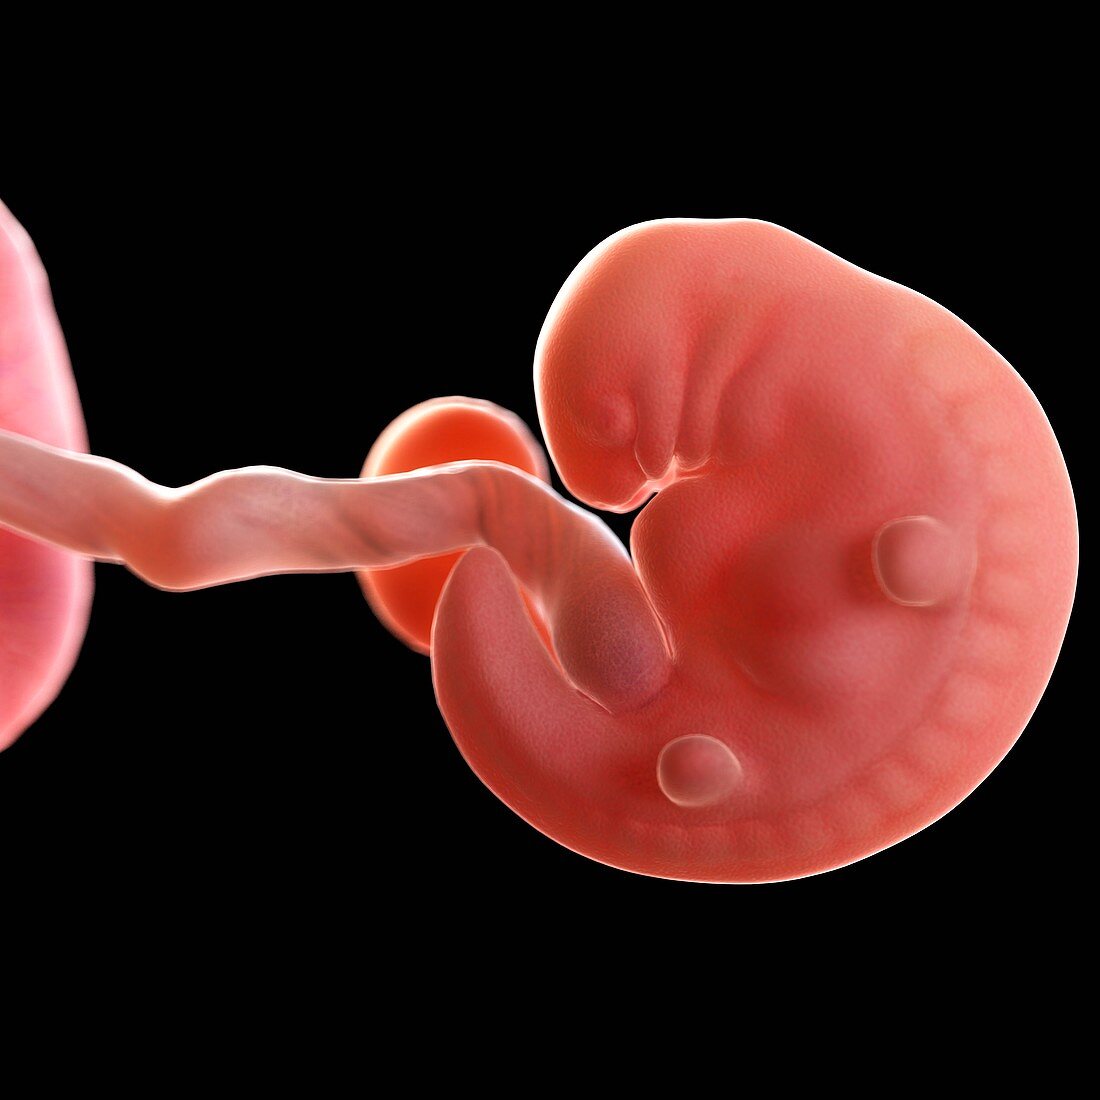 Human foetus age 6 weeks, illustration